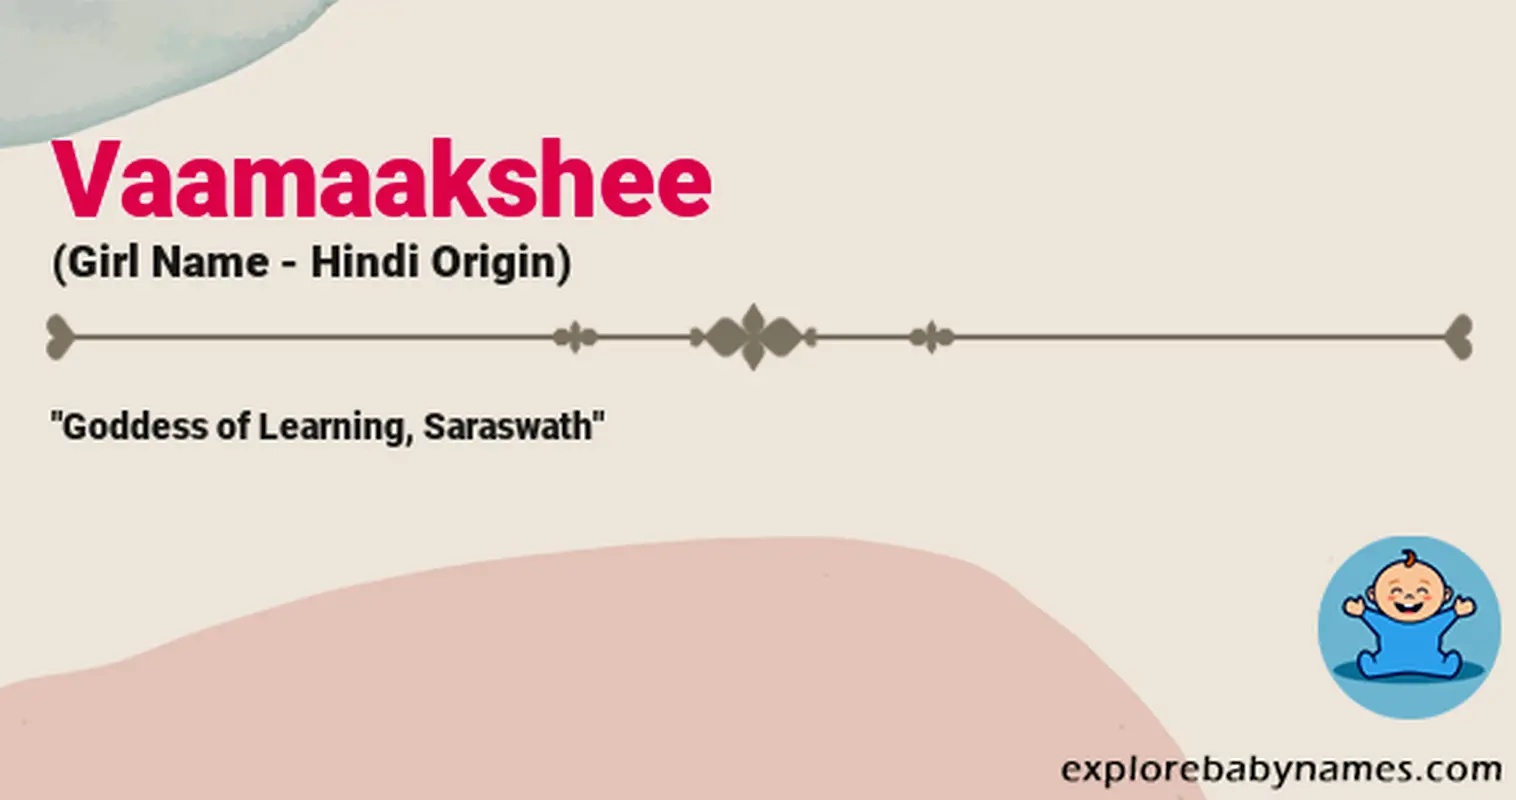 Meaning of Vaamaakshee